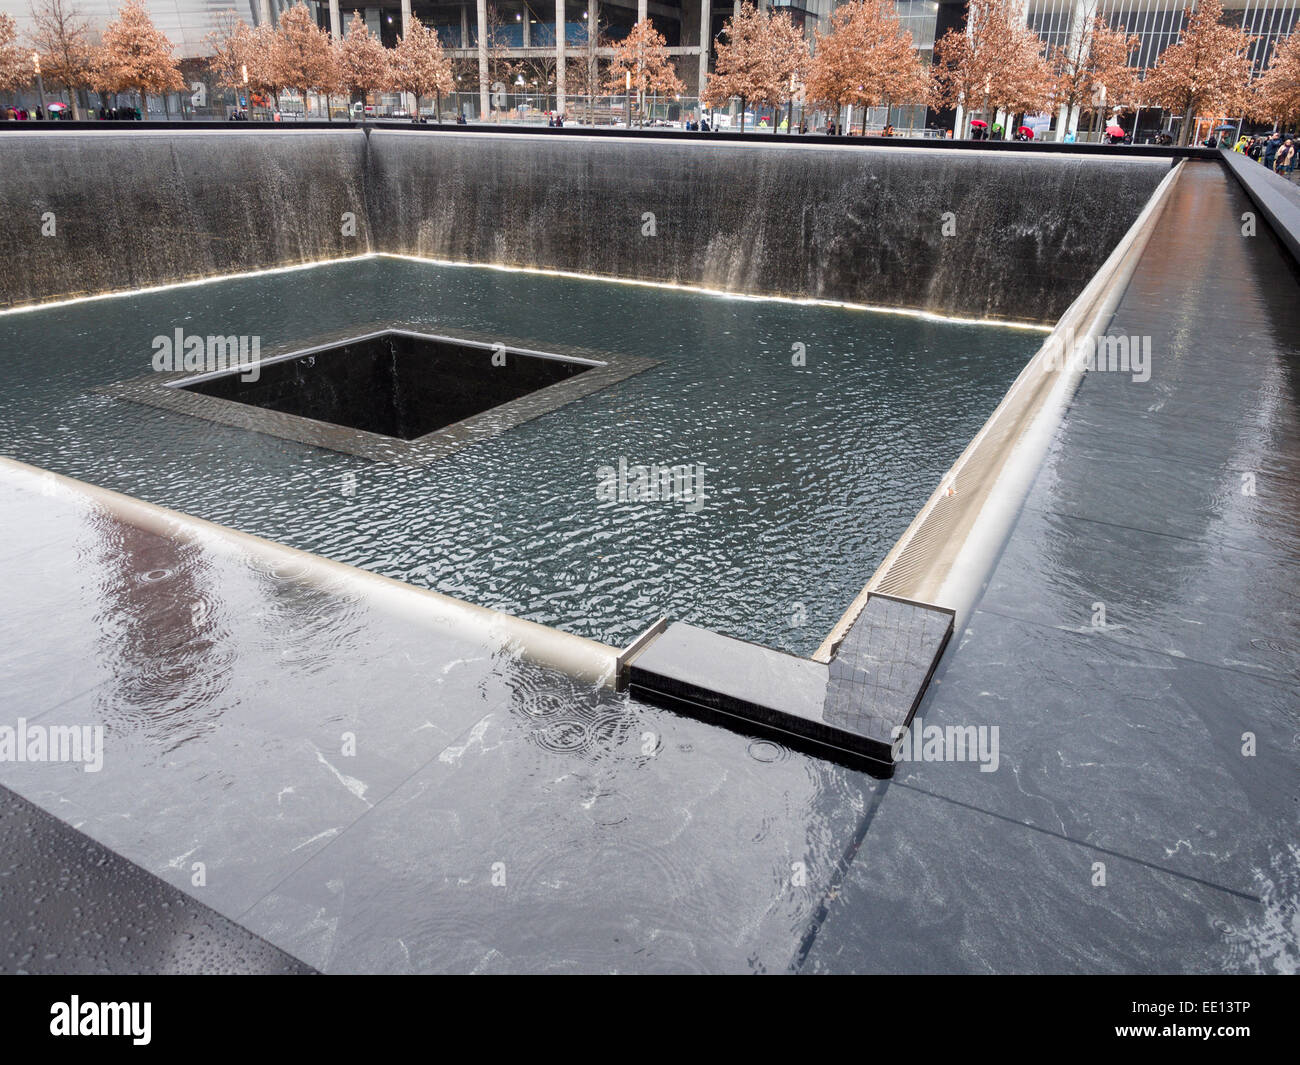 L'eau qui tombe au mémorial du 11 septembre à Ground Zero. Les touristes sont rares autour de la fosse profonde de la chute d'eau Banque D'Images